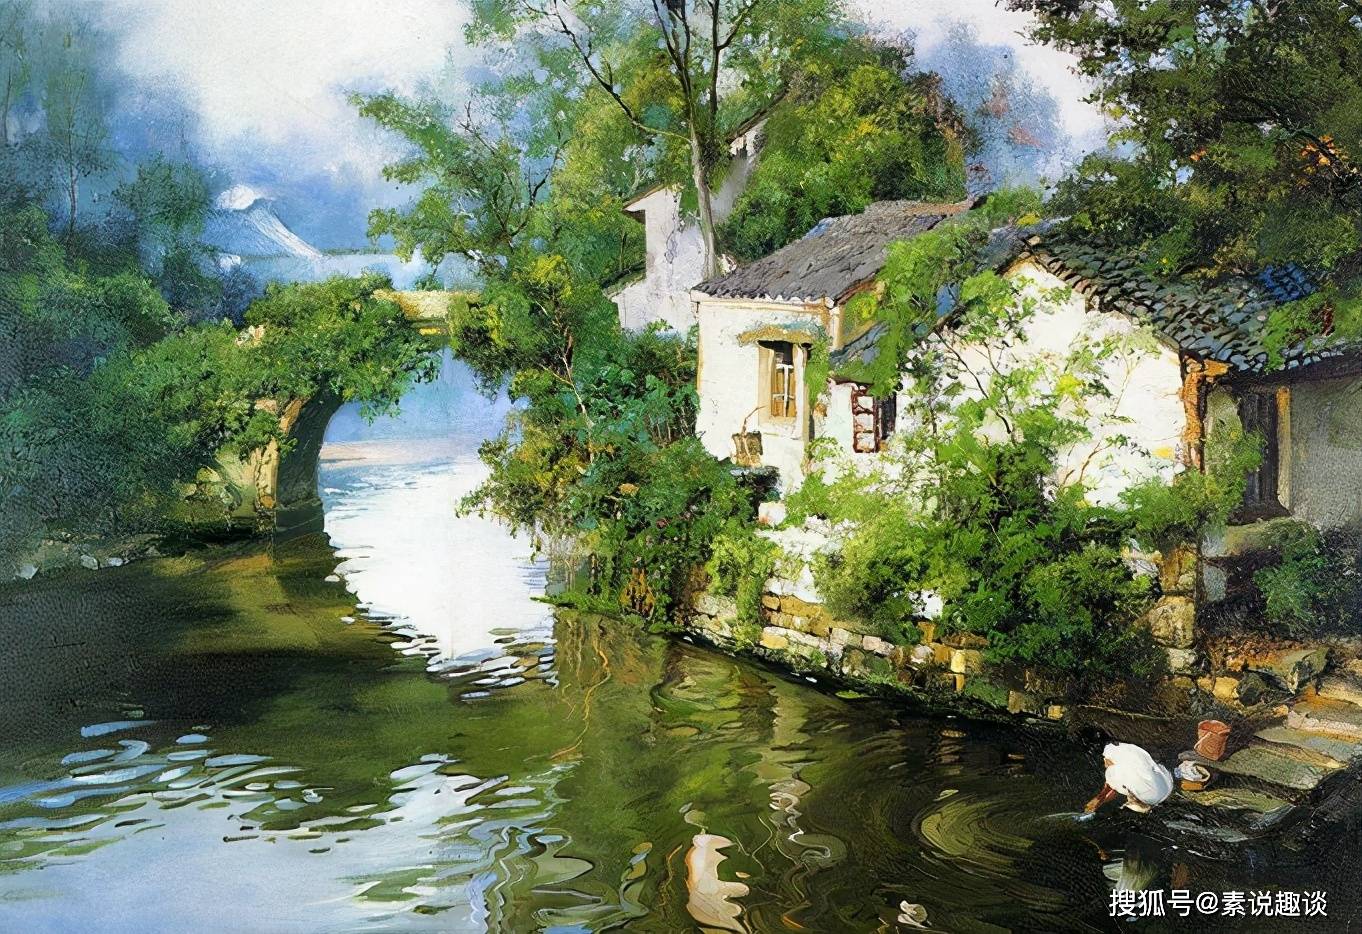 乡村美景油画如诗如画的独特风格别有一番家乡的韵味